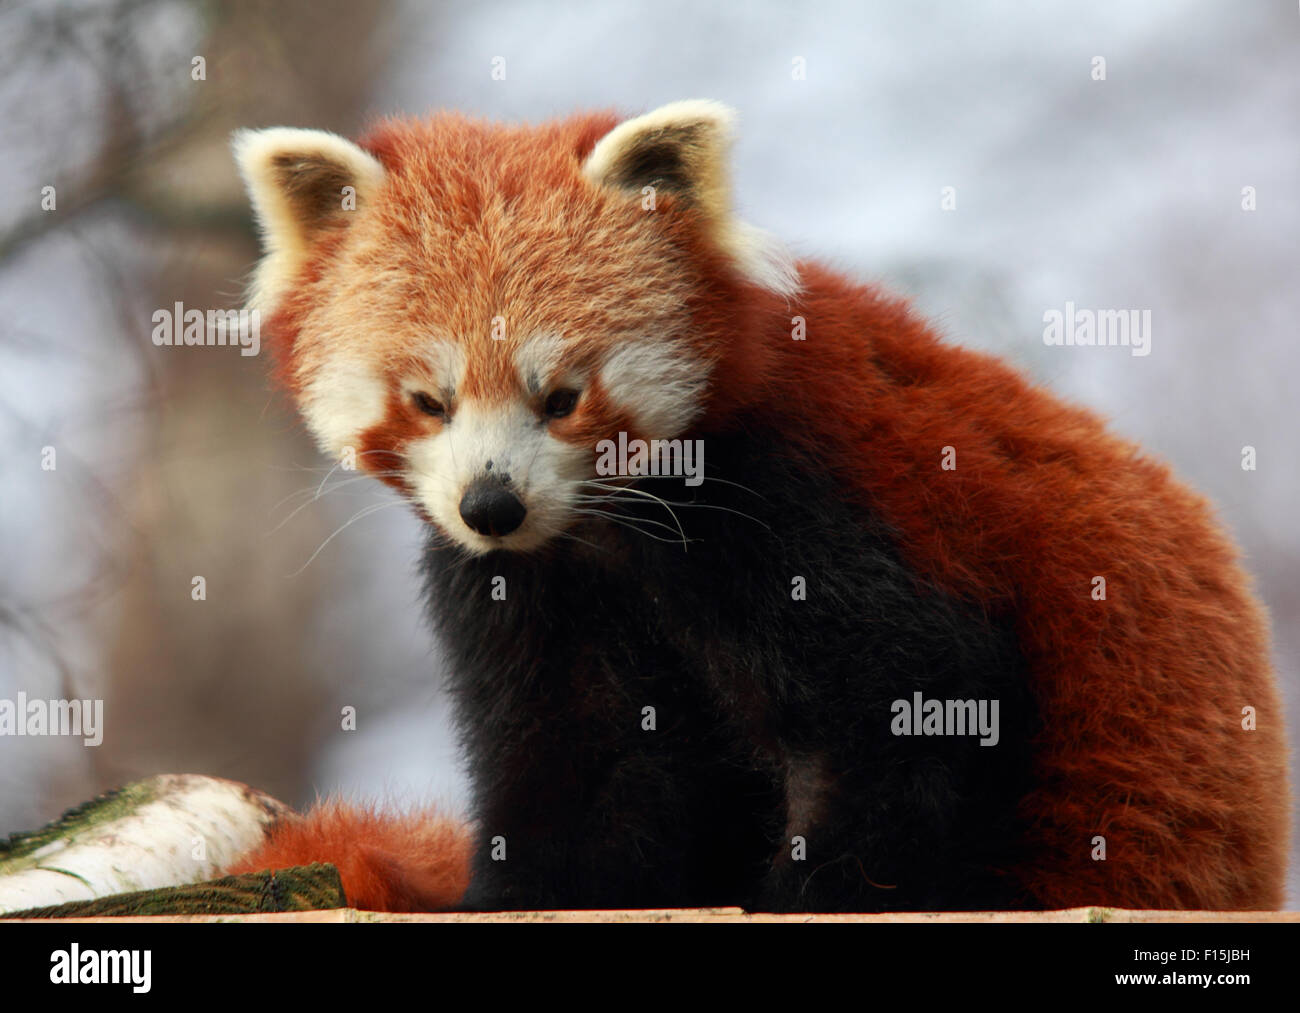 Måler vokal kontrast A lovely, tired, Red Panda Stock Photo - Alamy